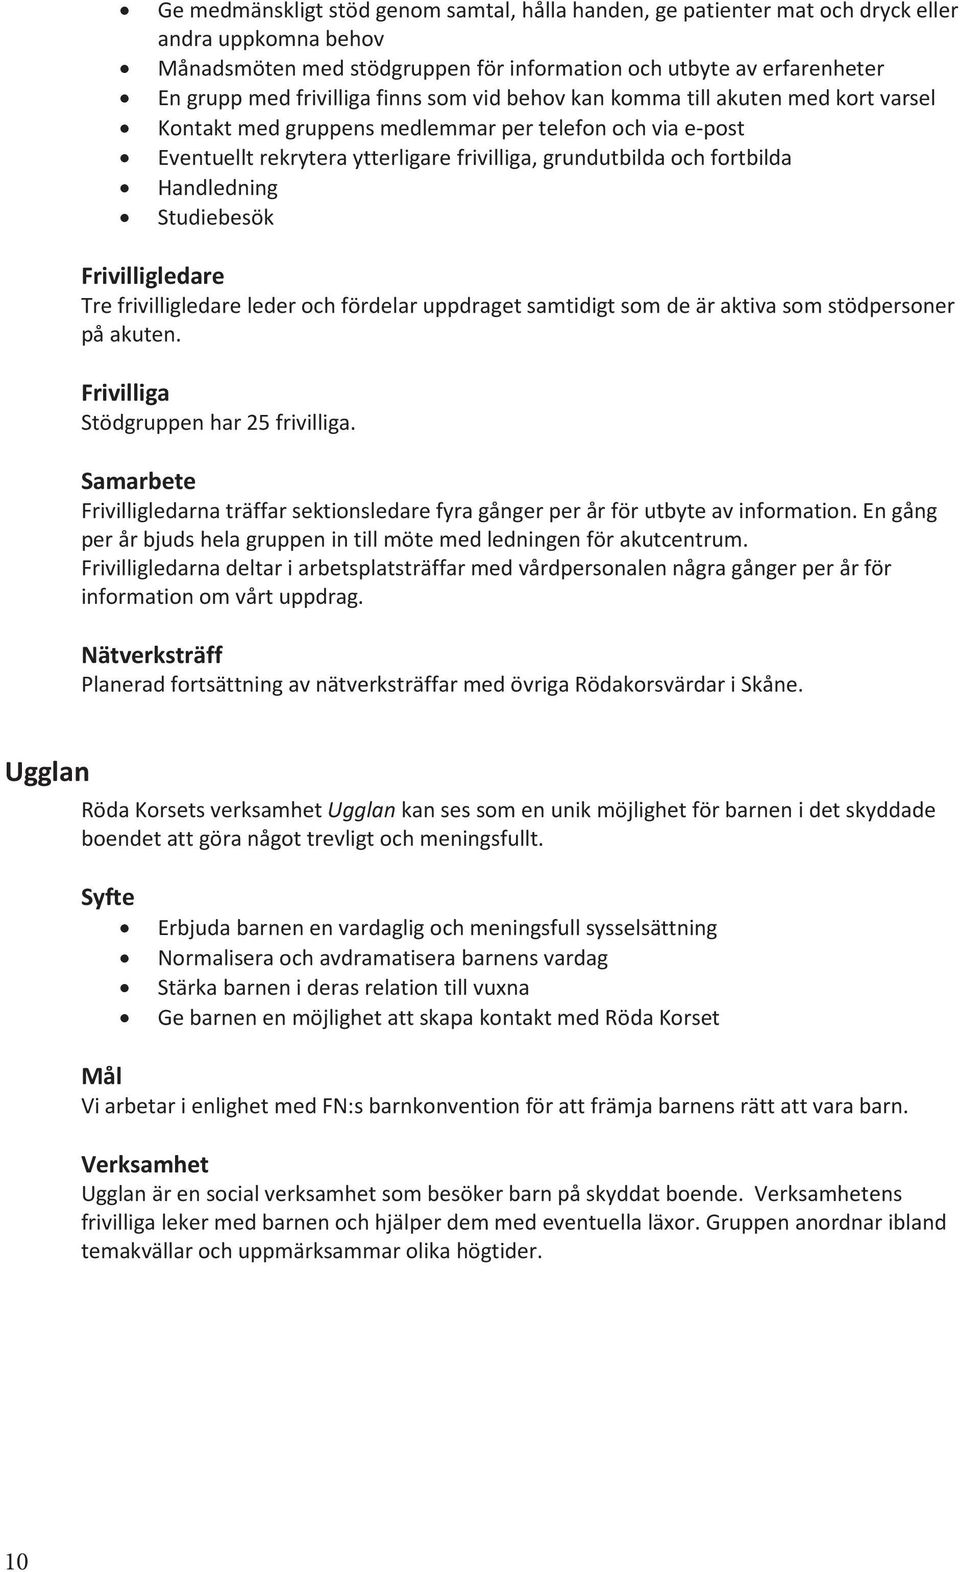 Verksamhetsplan Malmökretsen av Svenska Röda Korset - PDF Gratis ...